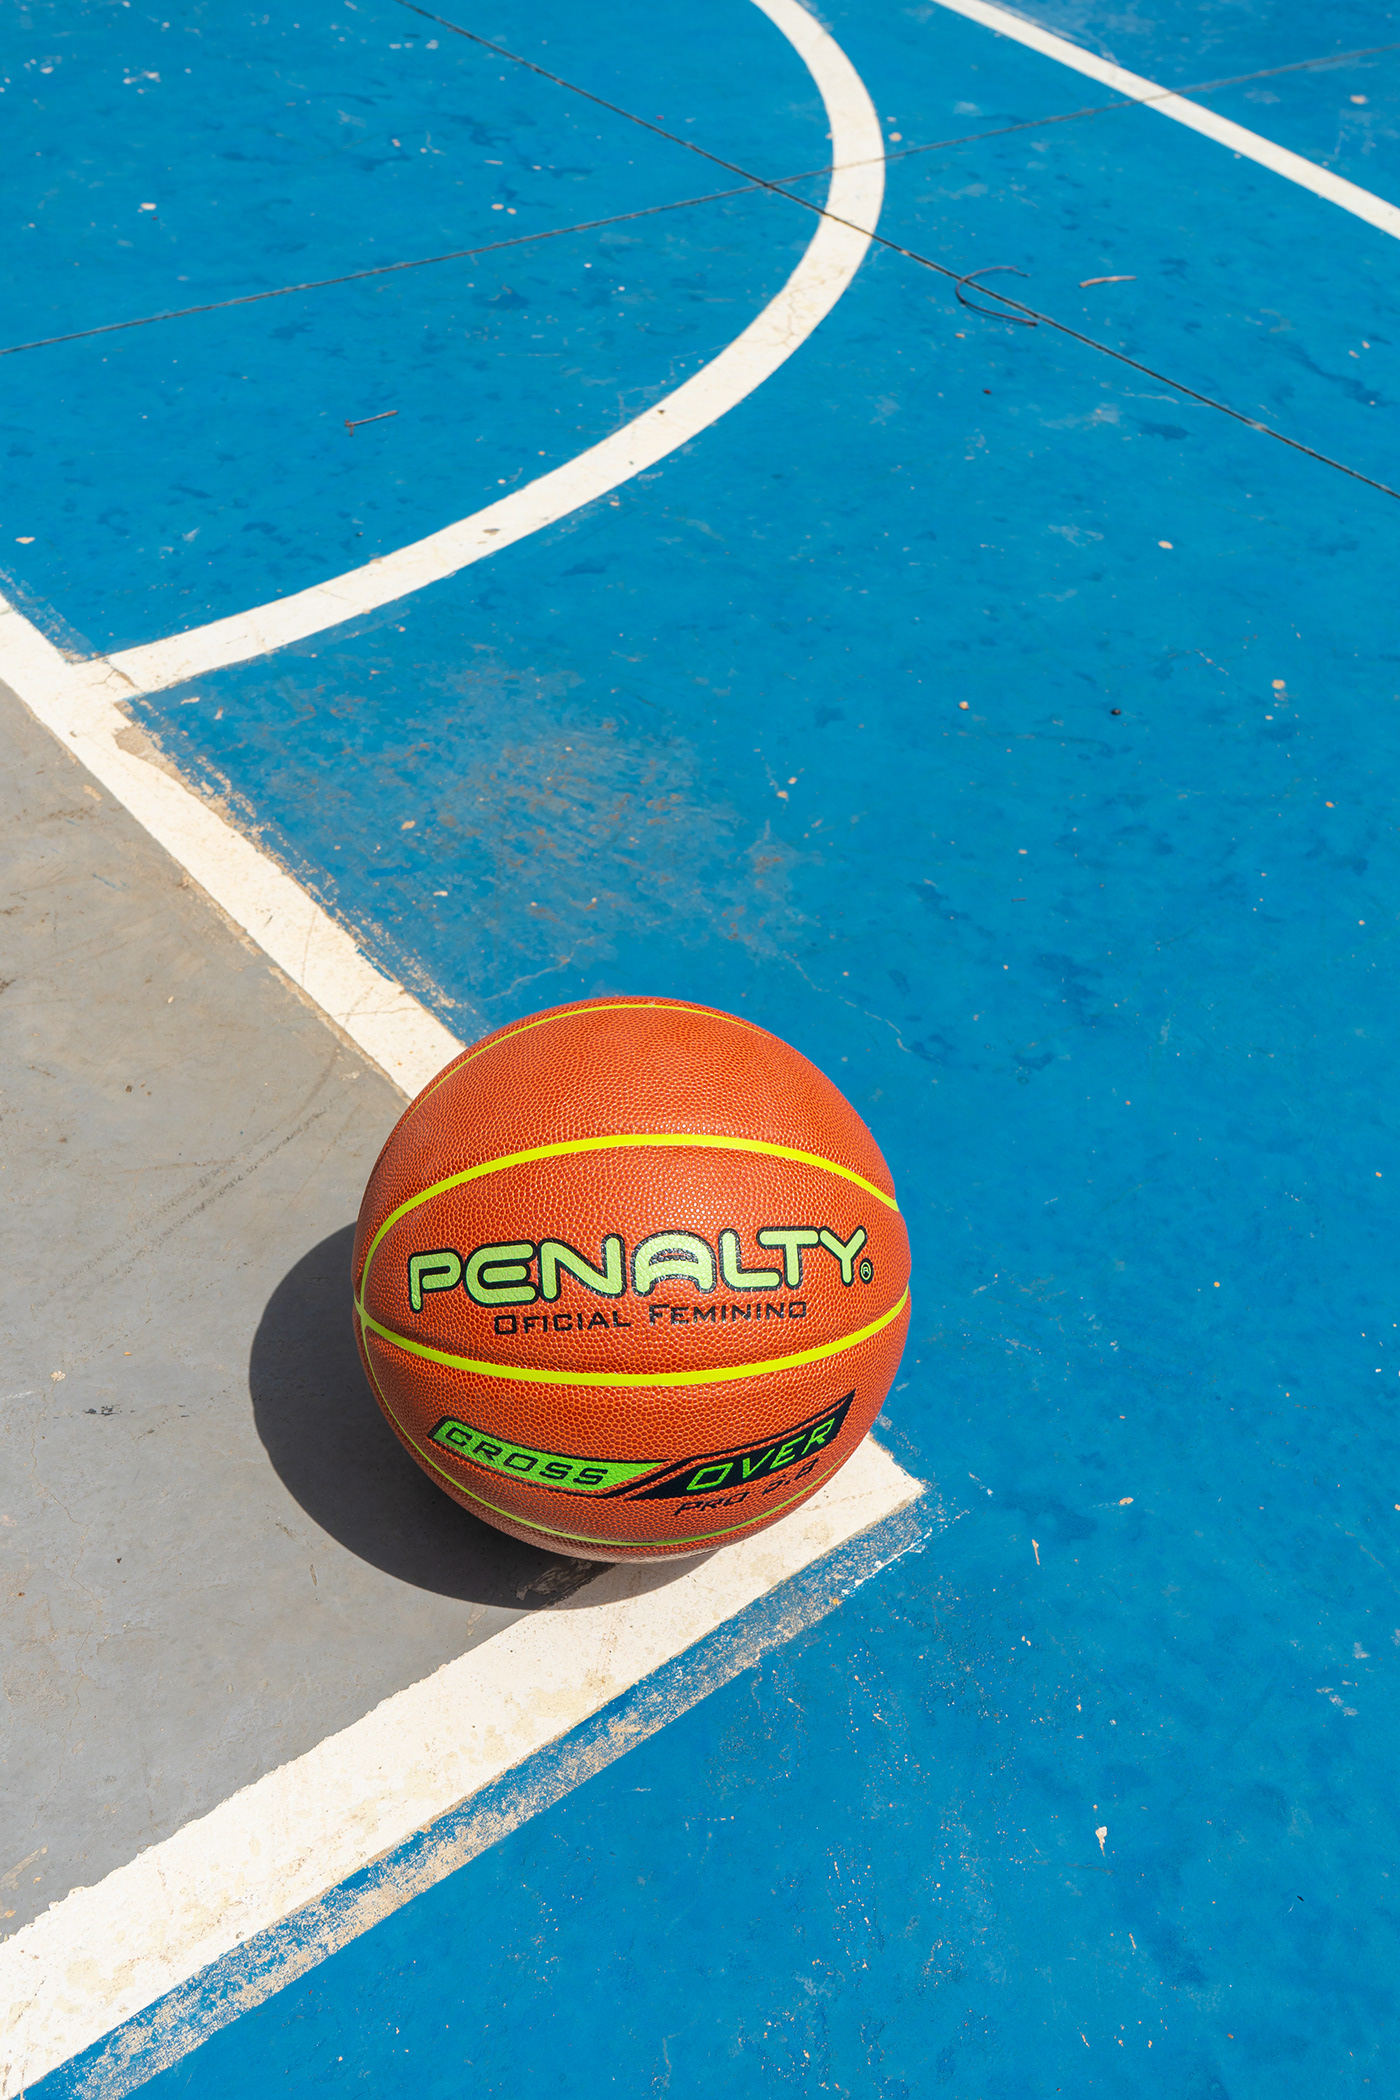 basquete basketball sport Esporte penalty